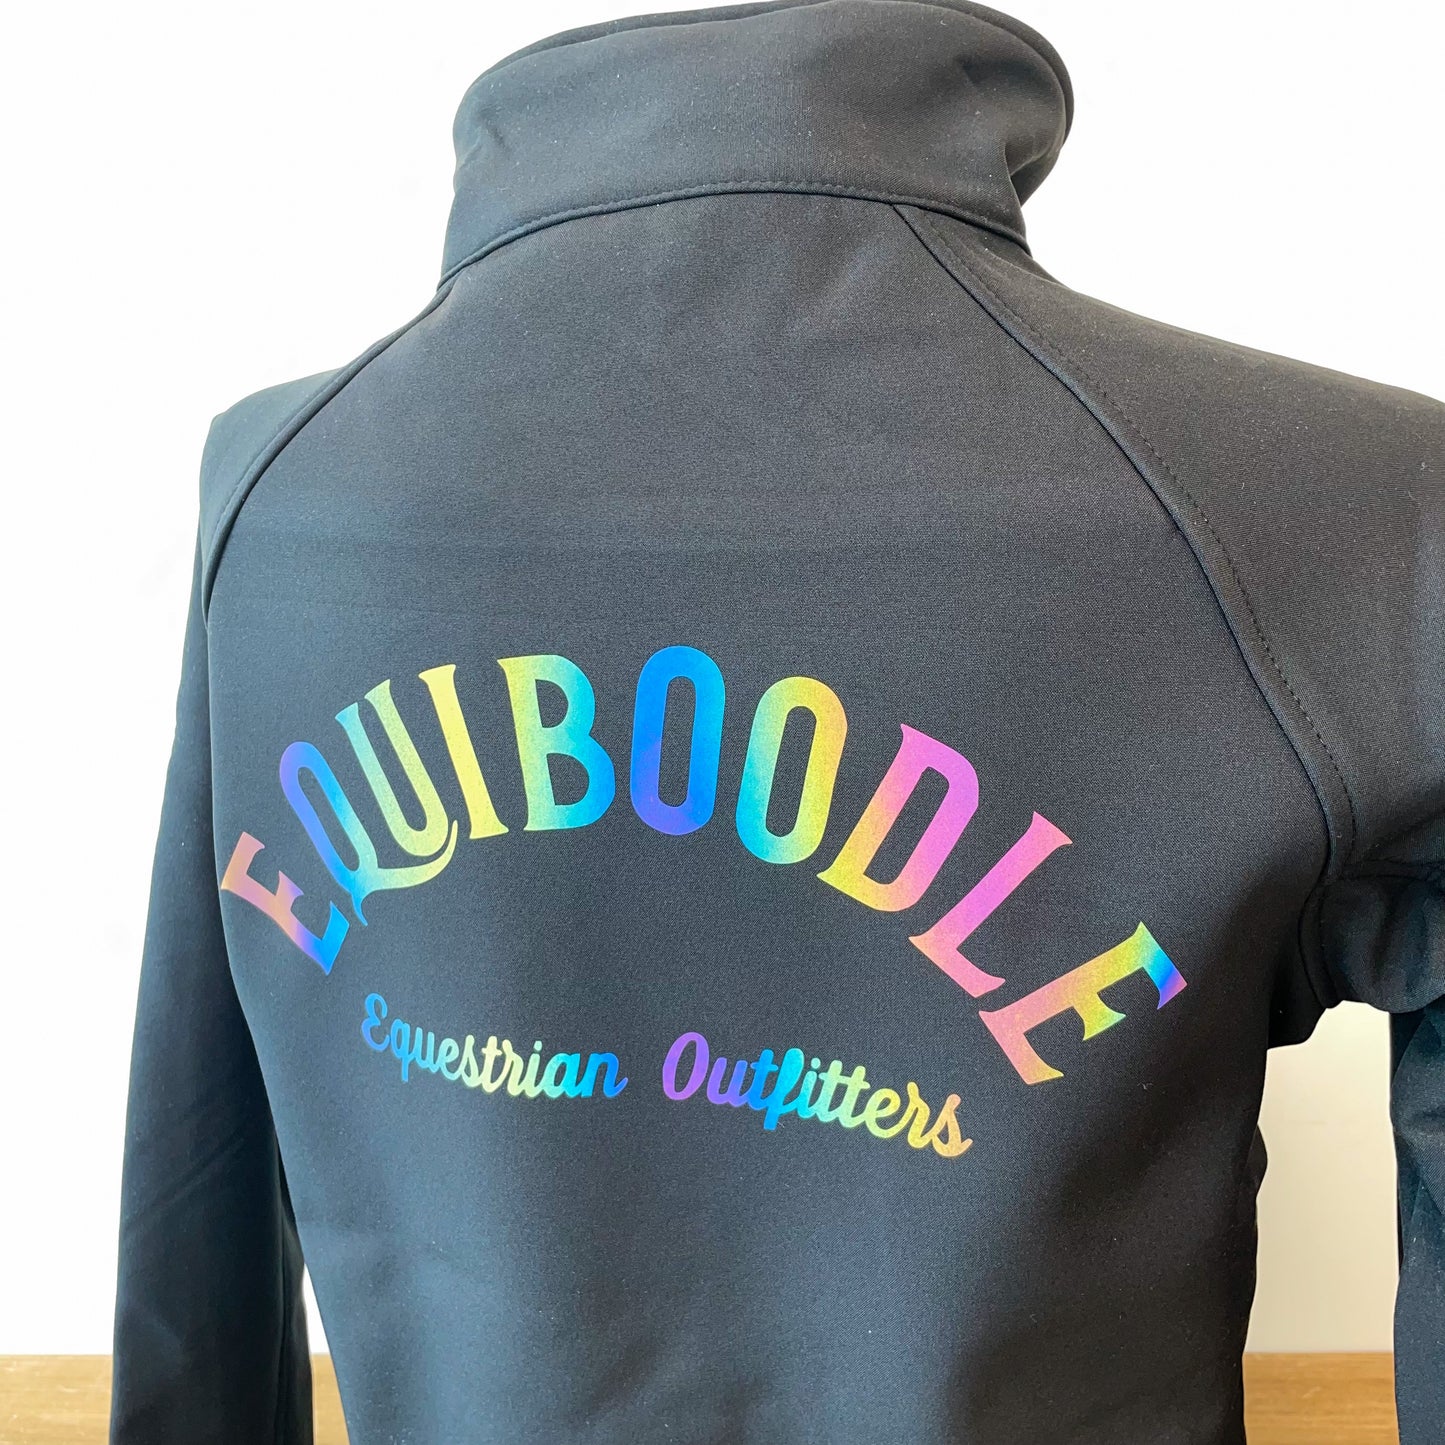 Equiboodle Softshell Jacket - Black/Rainbow Reflective